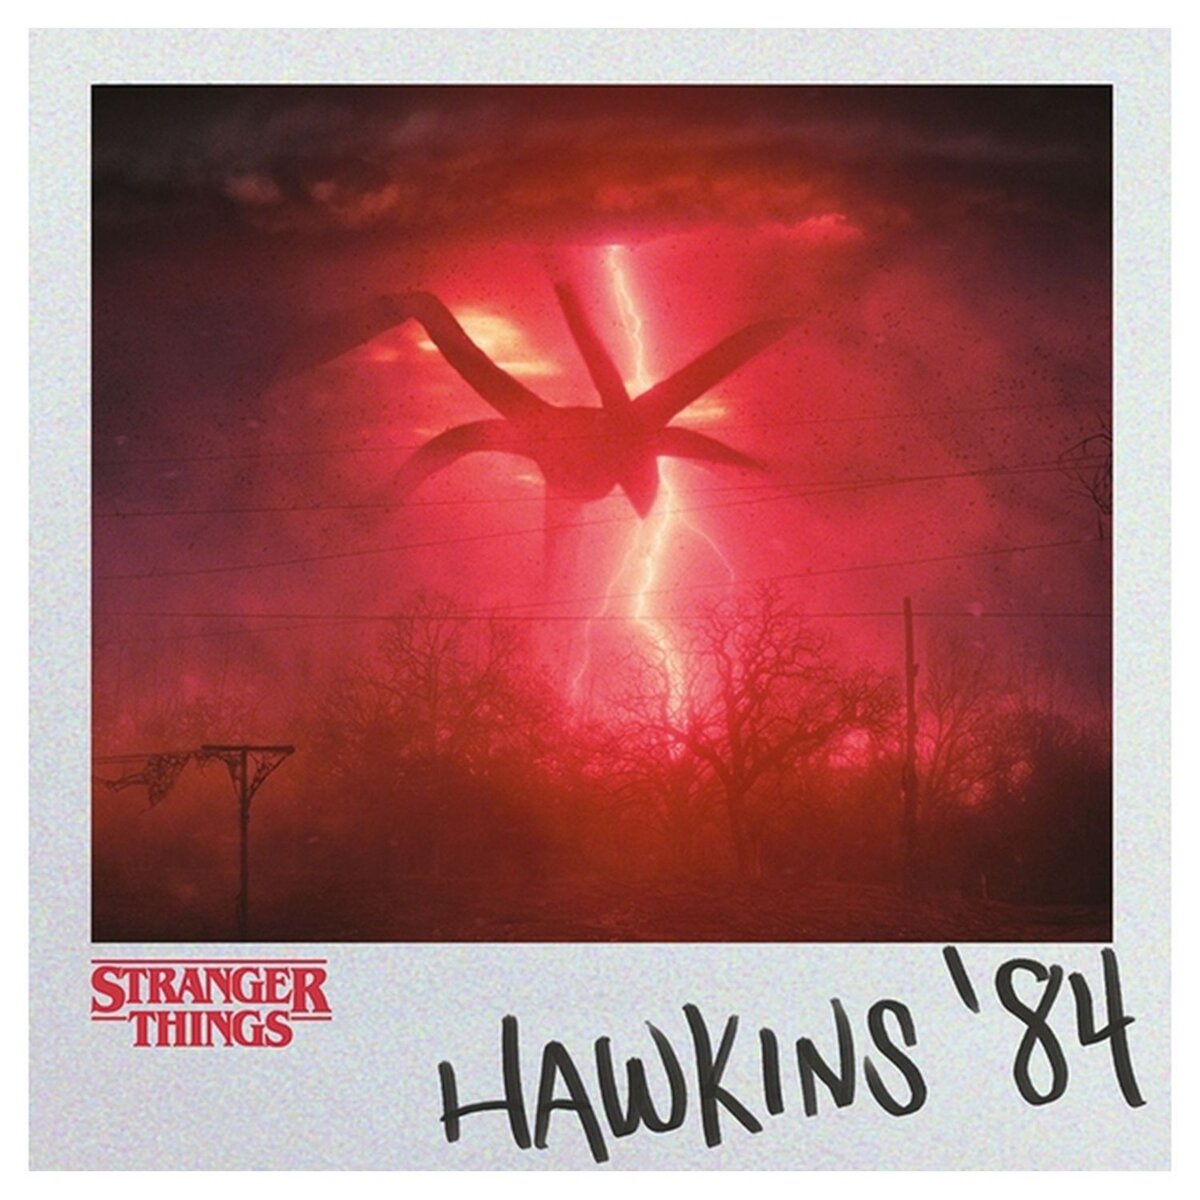 Toile Hawkins 84 Stranger Things